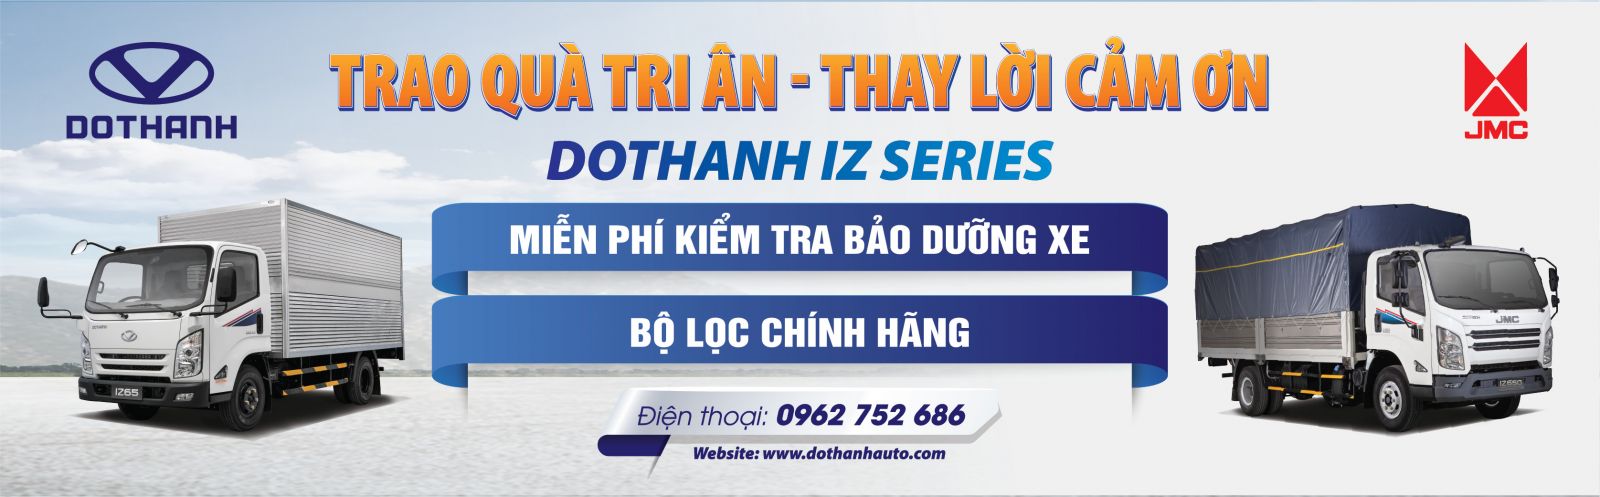 Chương trình tri ân khách hàng “Trao quà tri ân - Thay lời cảm ơn” doanh nghiệp vận tải Quang Huy diễn ra tại Đại lý 3S Auto Đông Nam (Hà Nội)